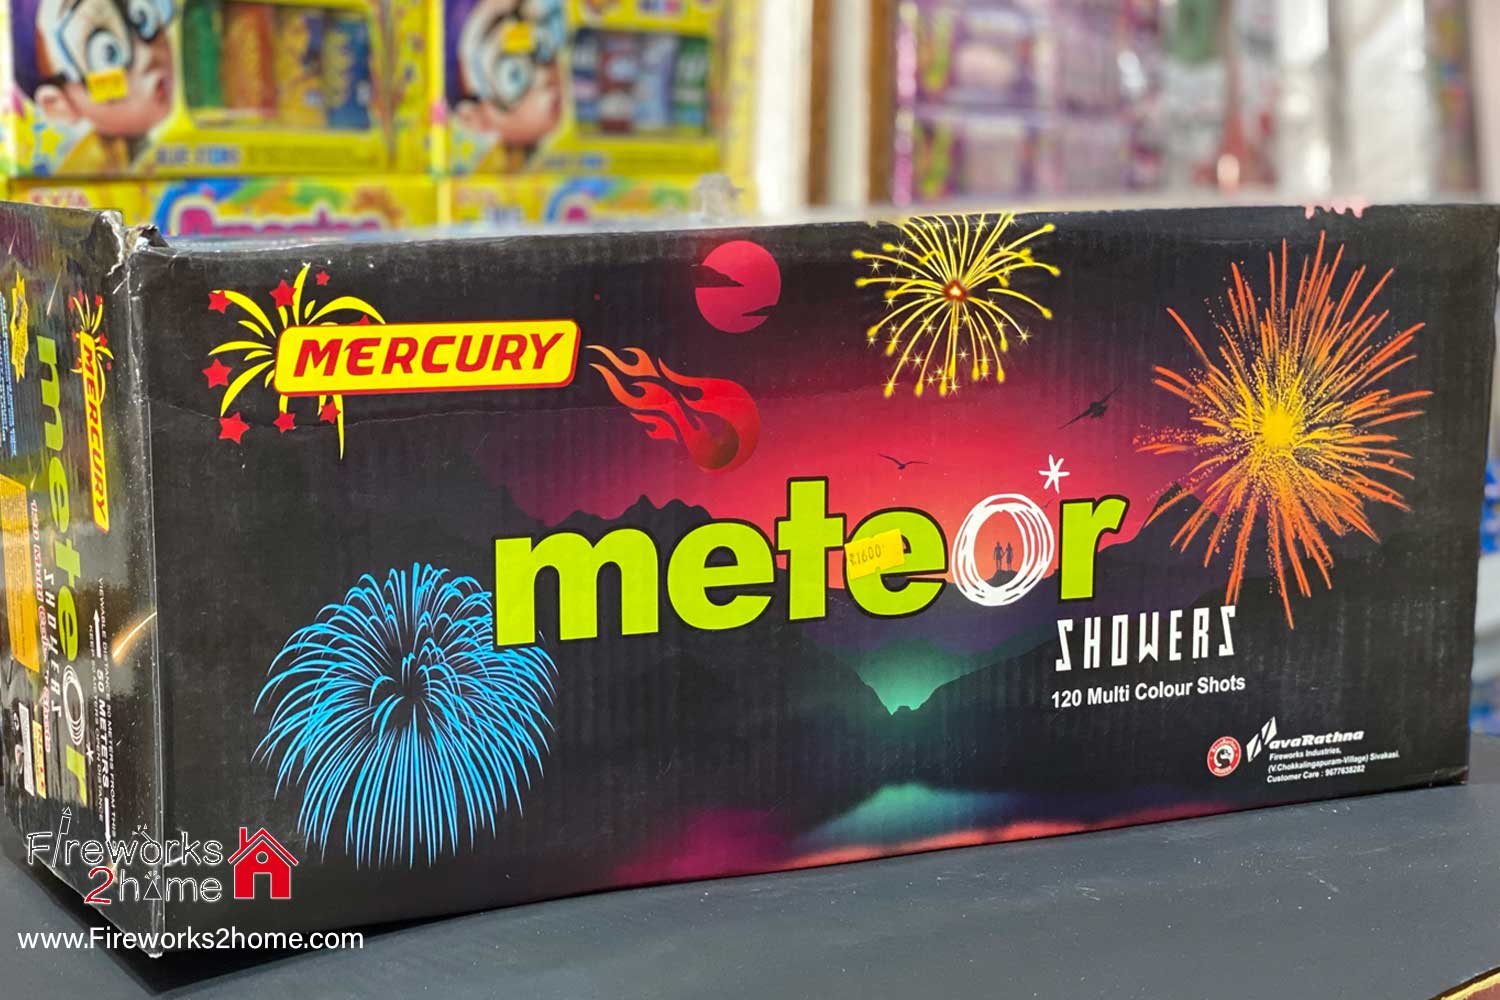 meteor-showers-(120-multi-color-shots)-mercury